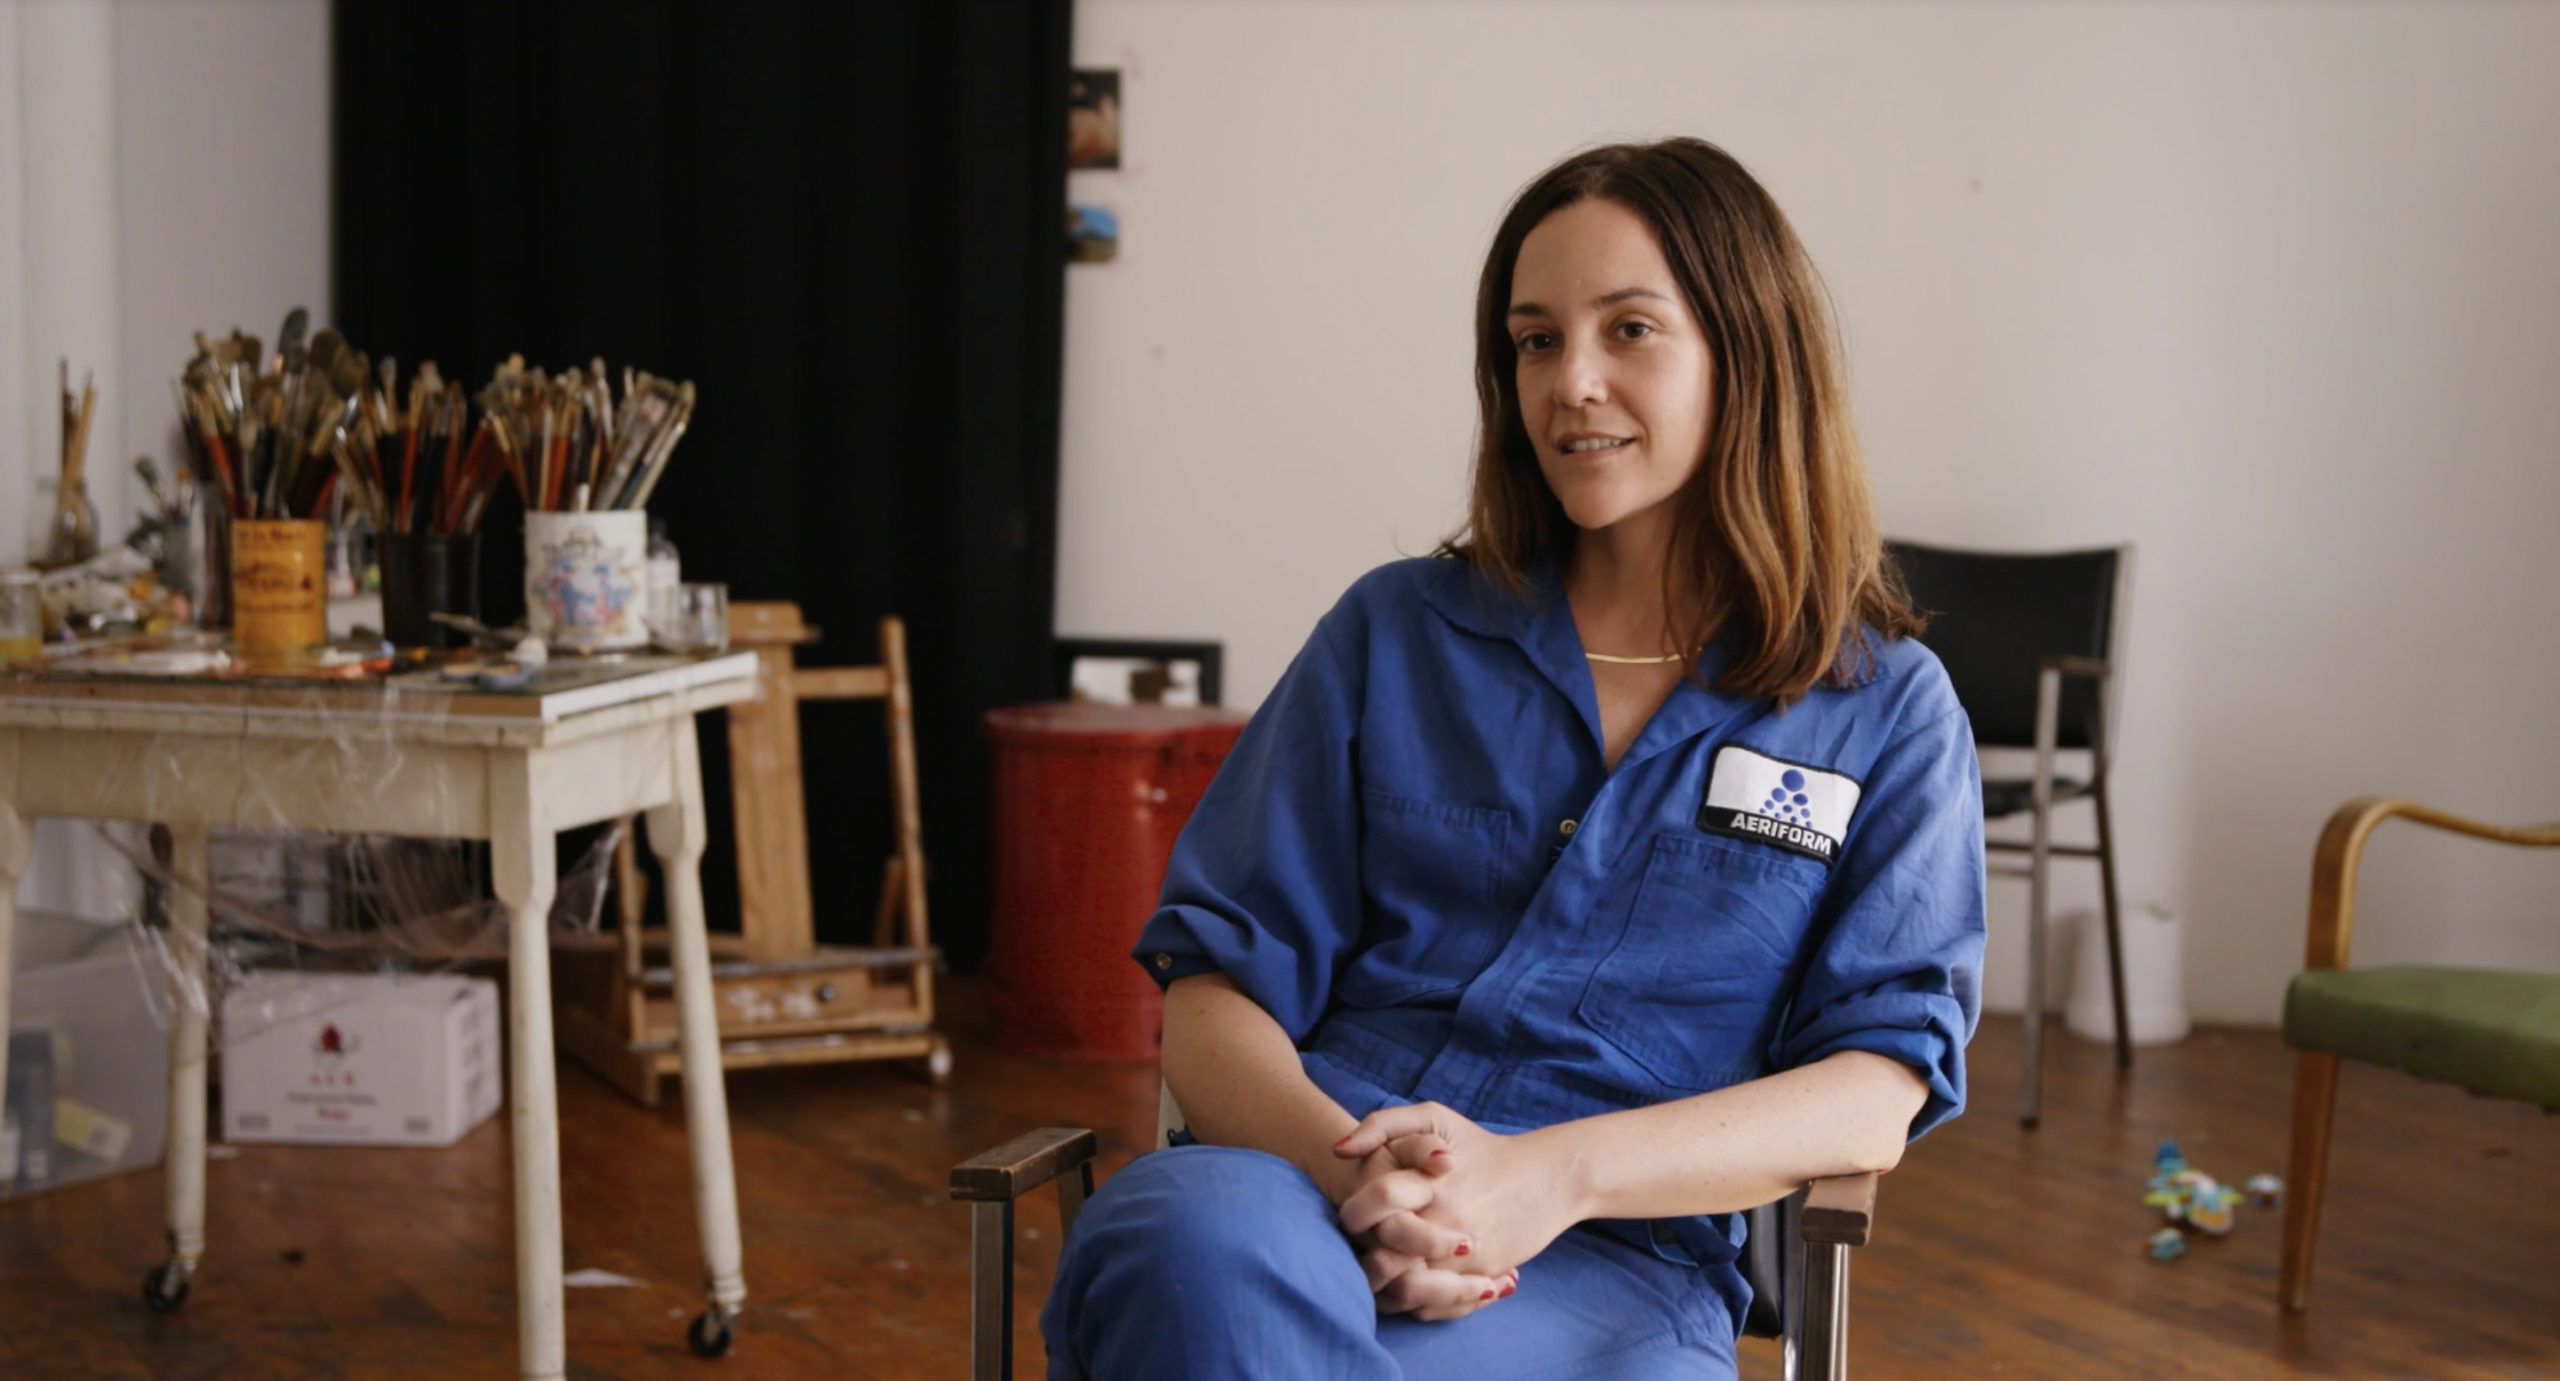 Artist Jenna Gribbon as seen in Kelcey Edwards’ documentary 